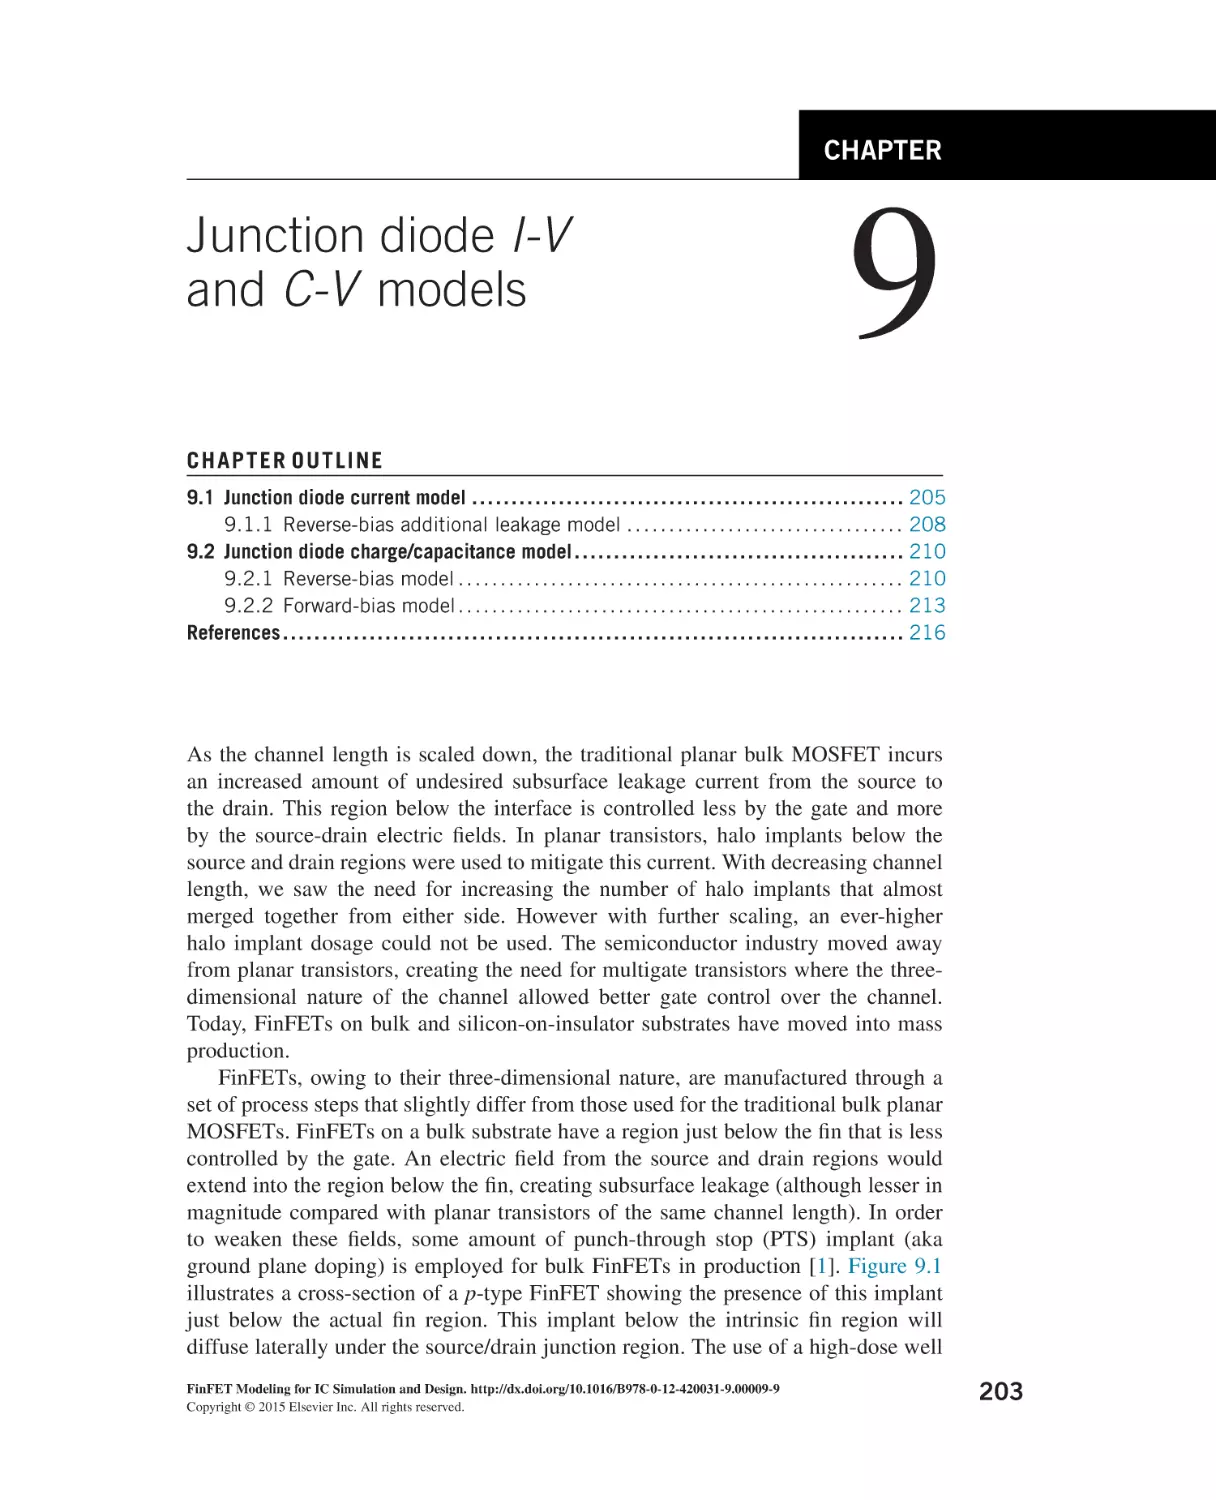 9 Junction diode I-V and C-V models